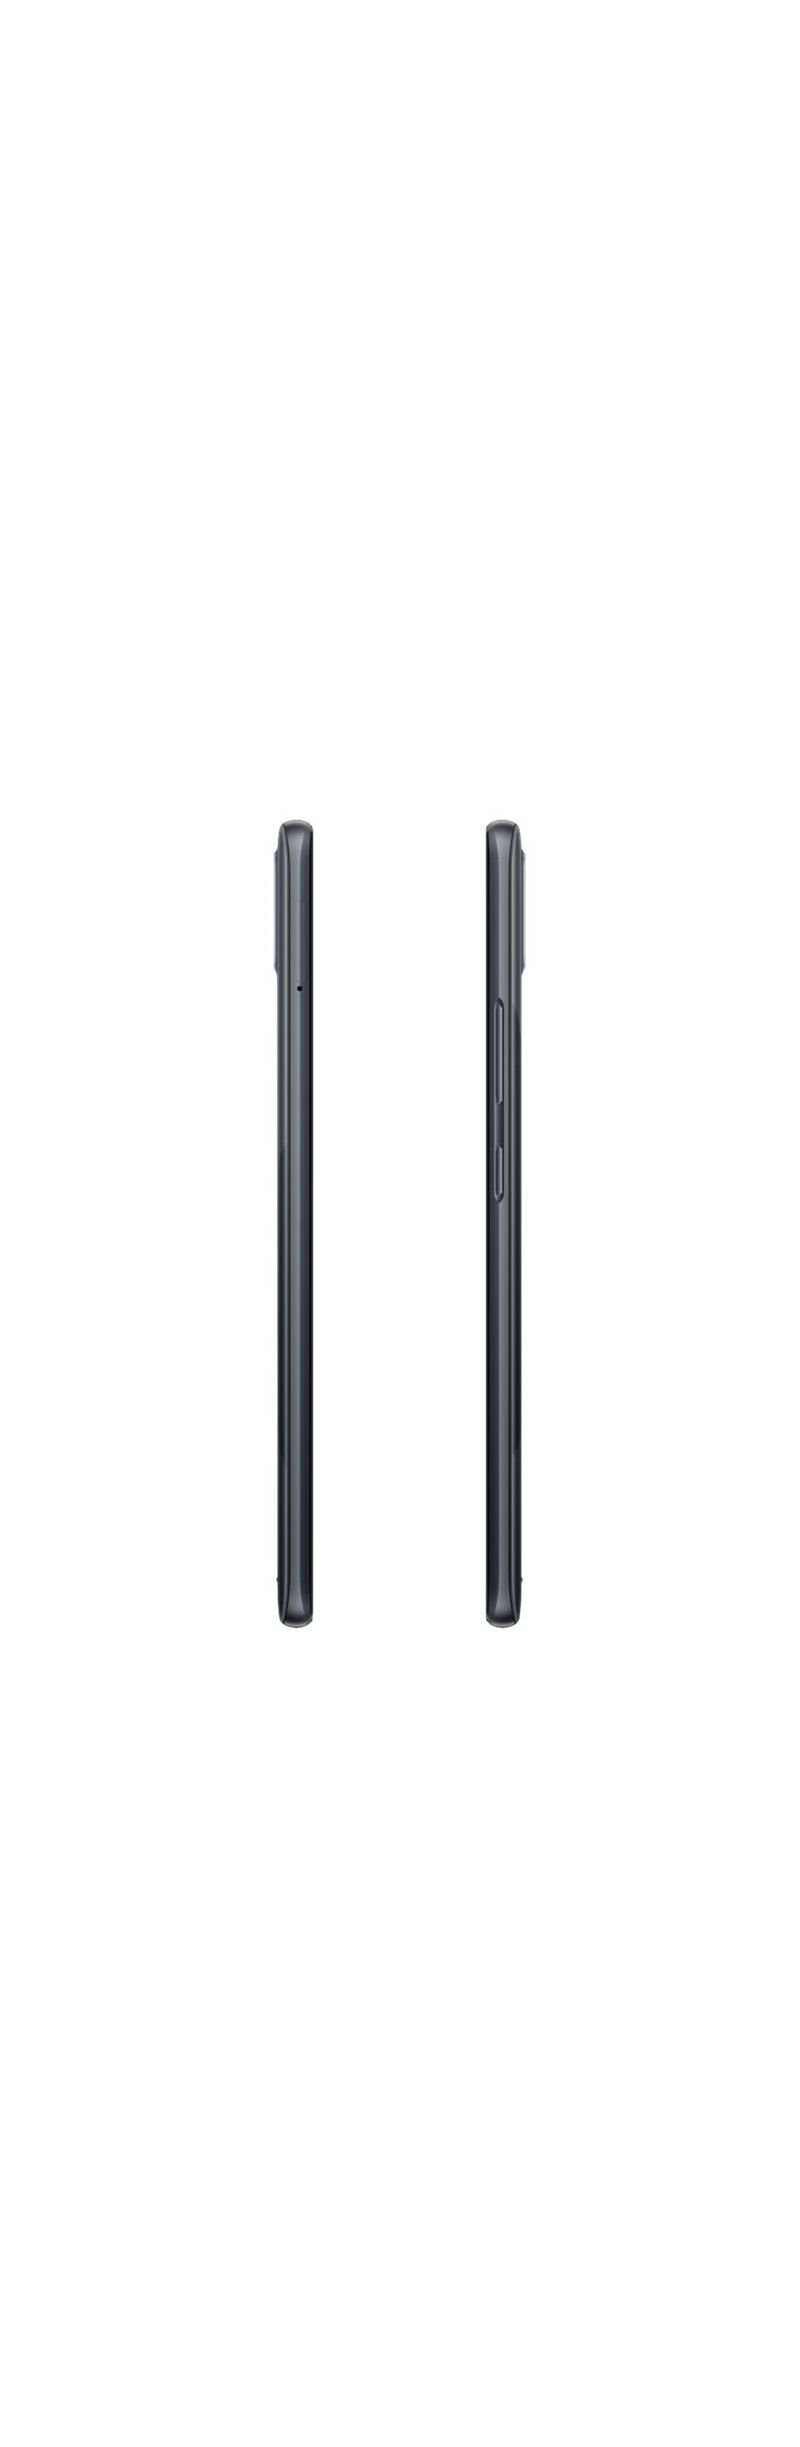 Realme C25Y Dual-Sim 128GB, Android, metal grey